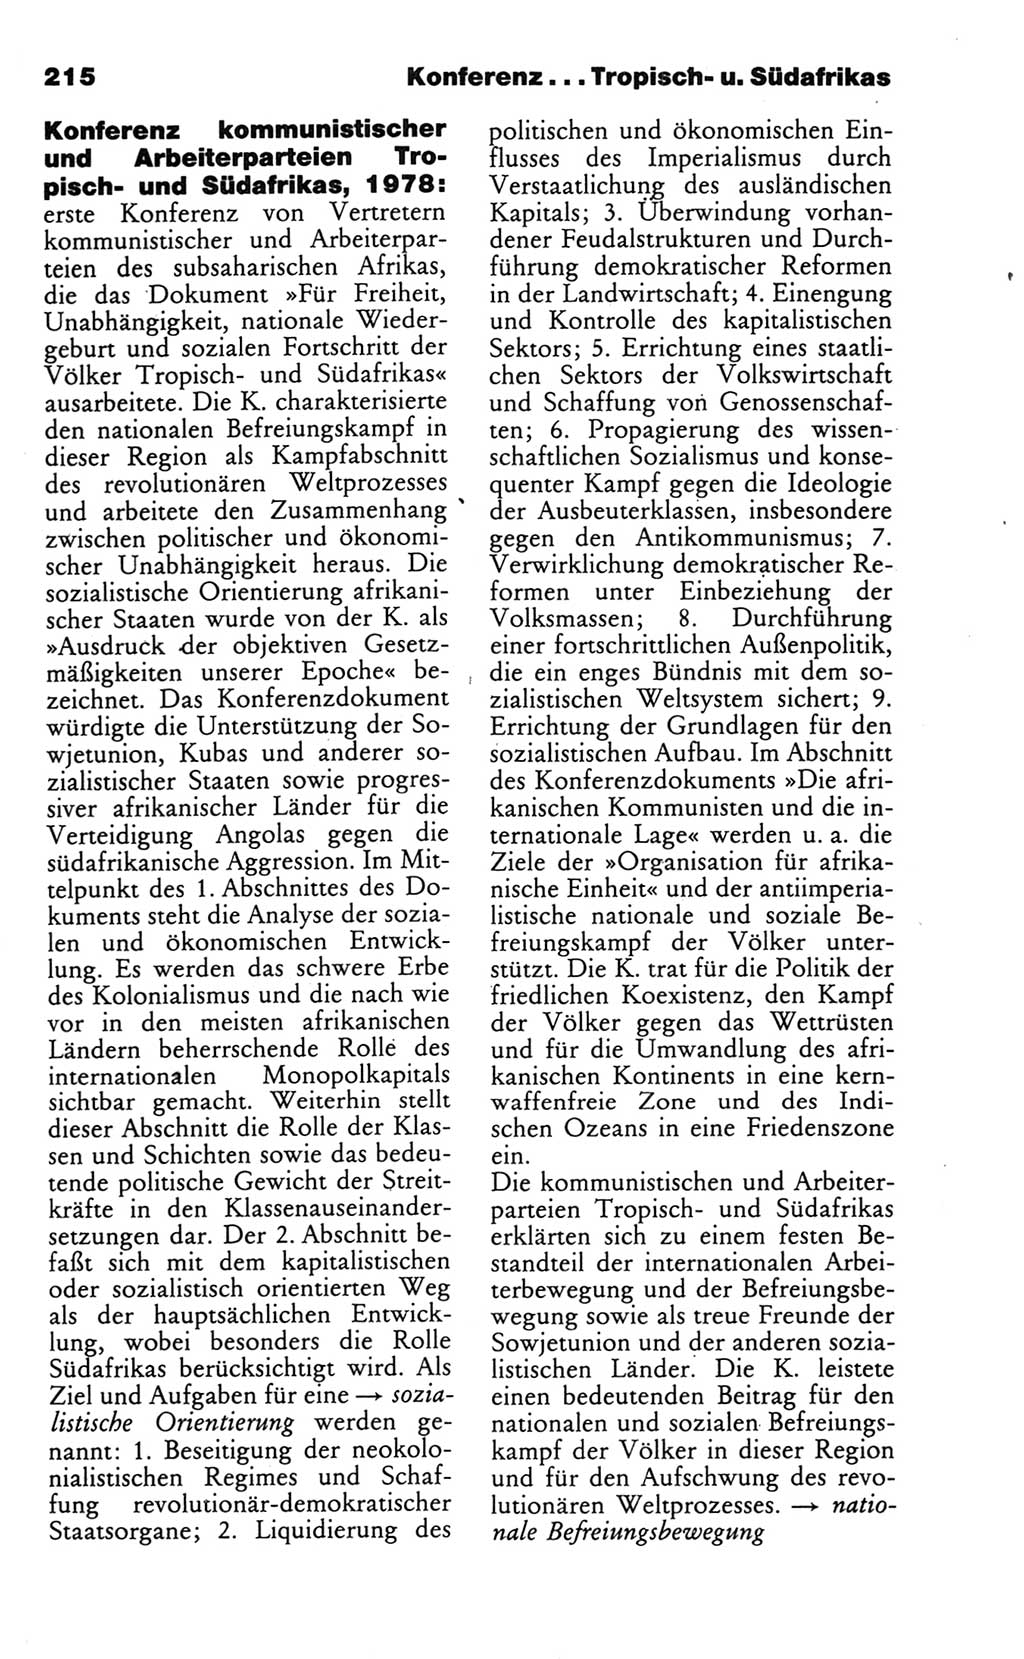 Wörterbuch des wissenschaftlichen Kommunismus [Deutsche Demokratische Republik (DDR)] 1986, Seite 215 (Wb. wiss. Komm. DDR 1986, S. 215)